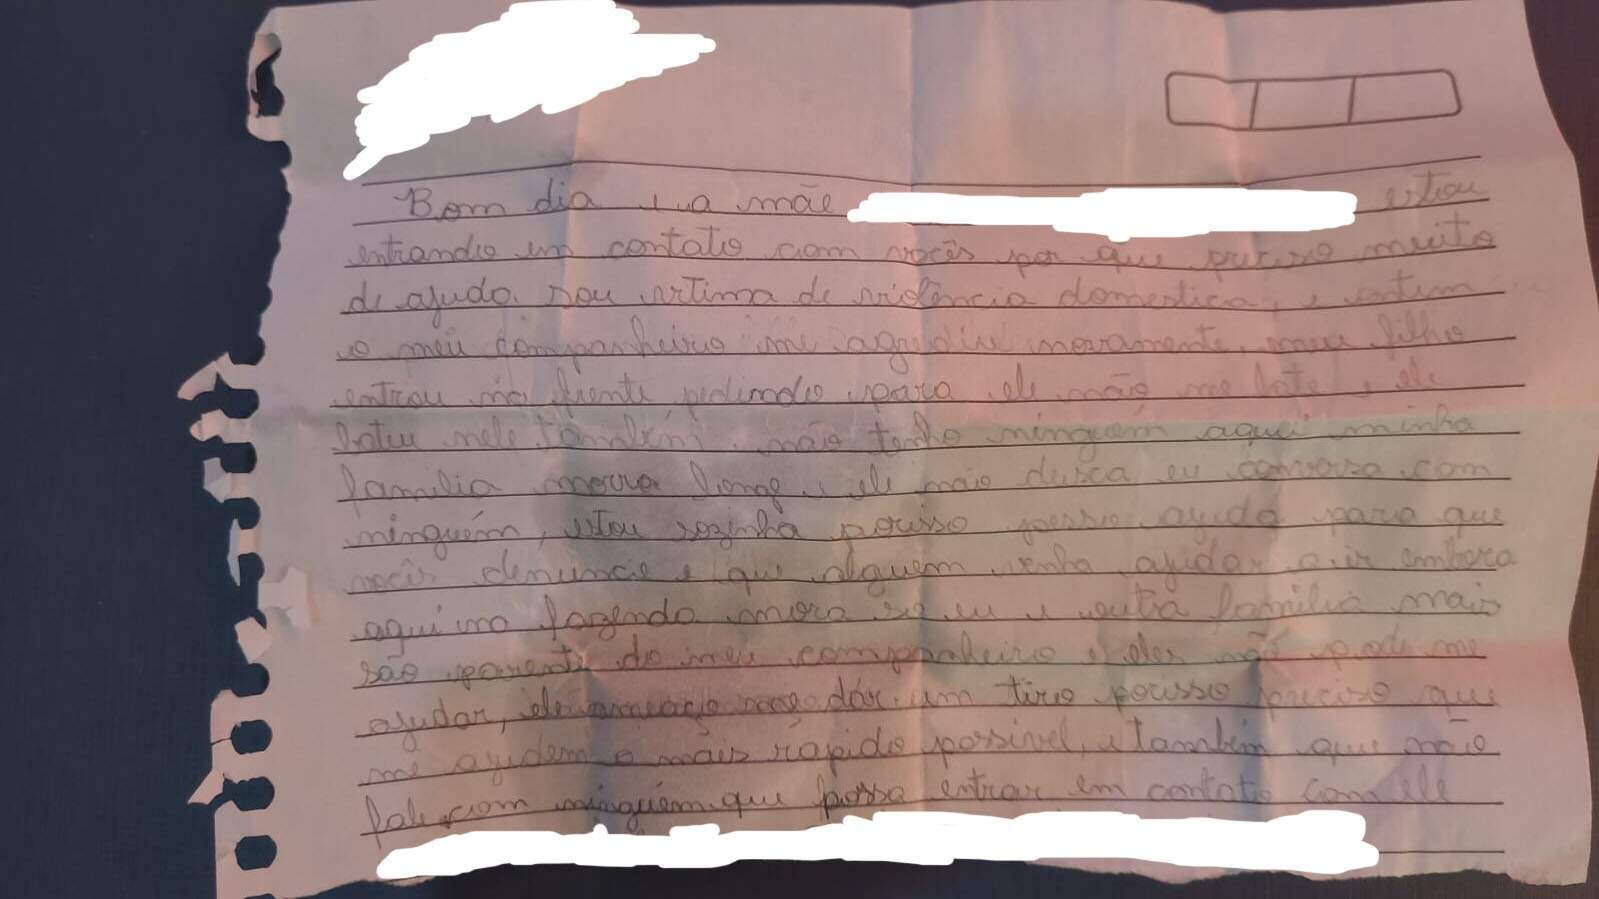 “Ameaçou me dar tiro”, disse mulher em carta levada para escola pelo filho